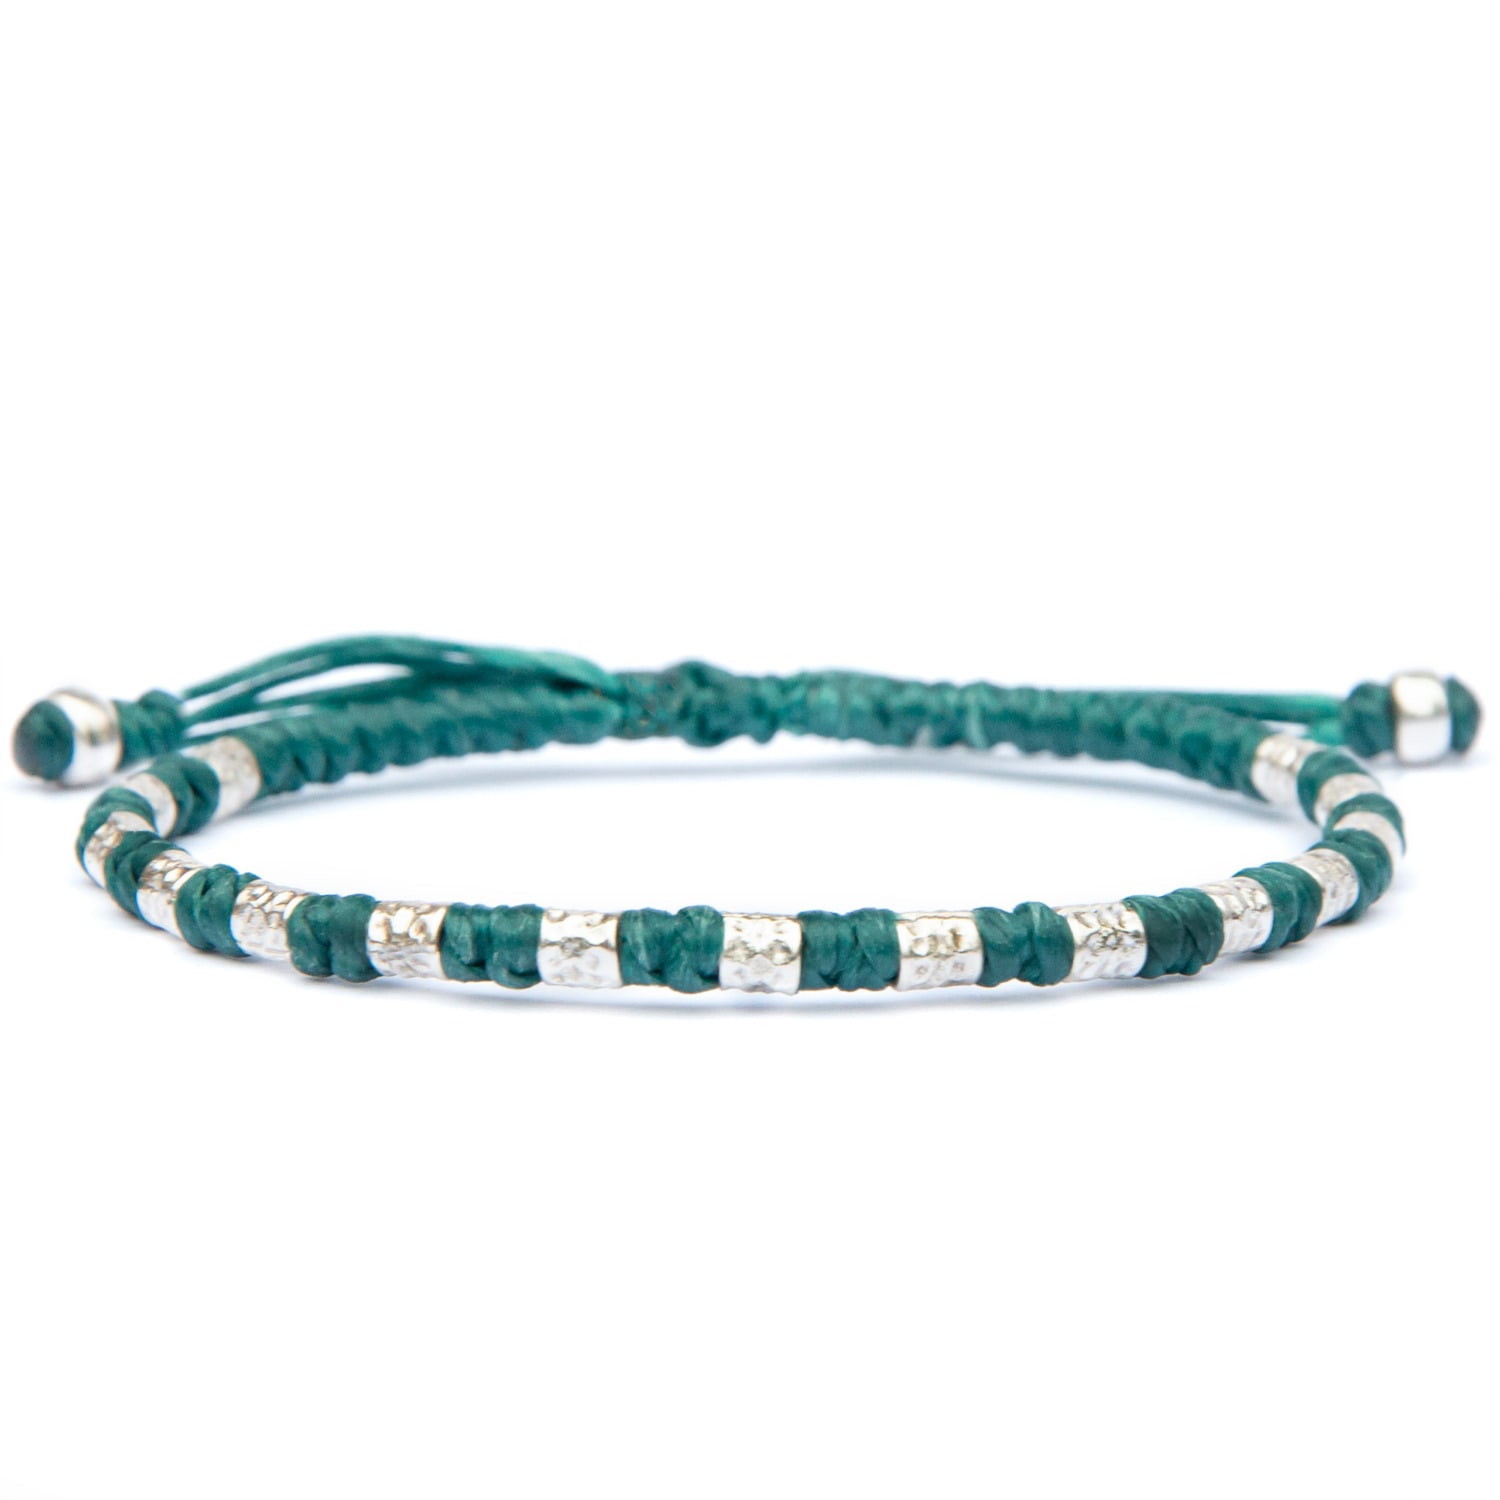 Viking Bracele For Men - Handmade Of Vegan Rope And Silver - Yule - Green Harbour UK Bracelets